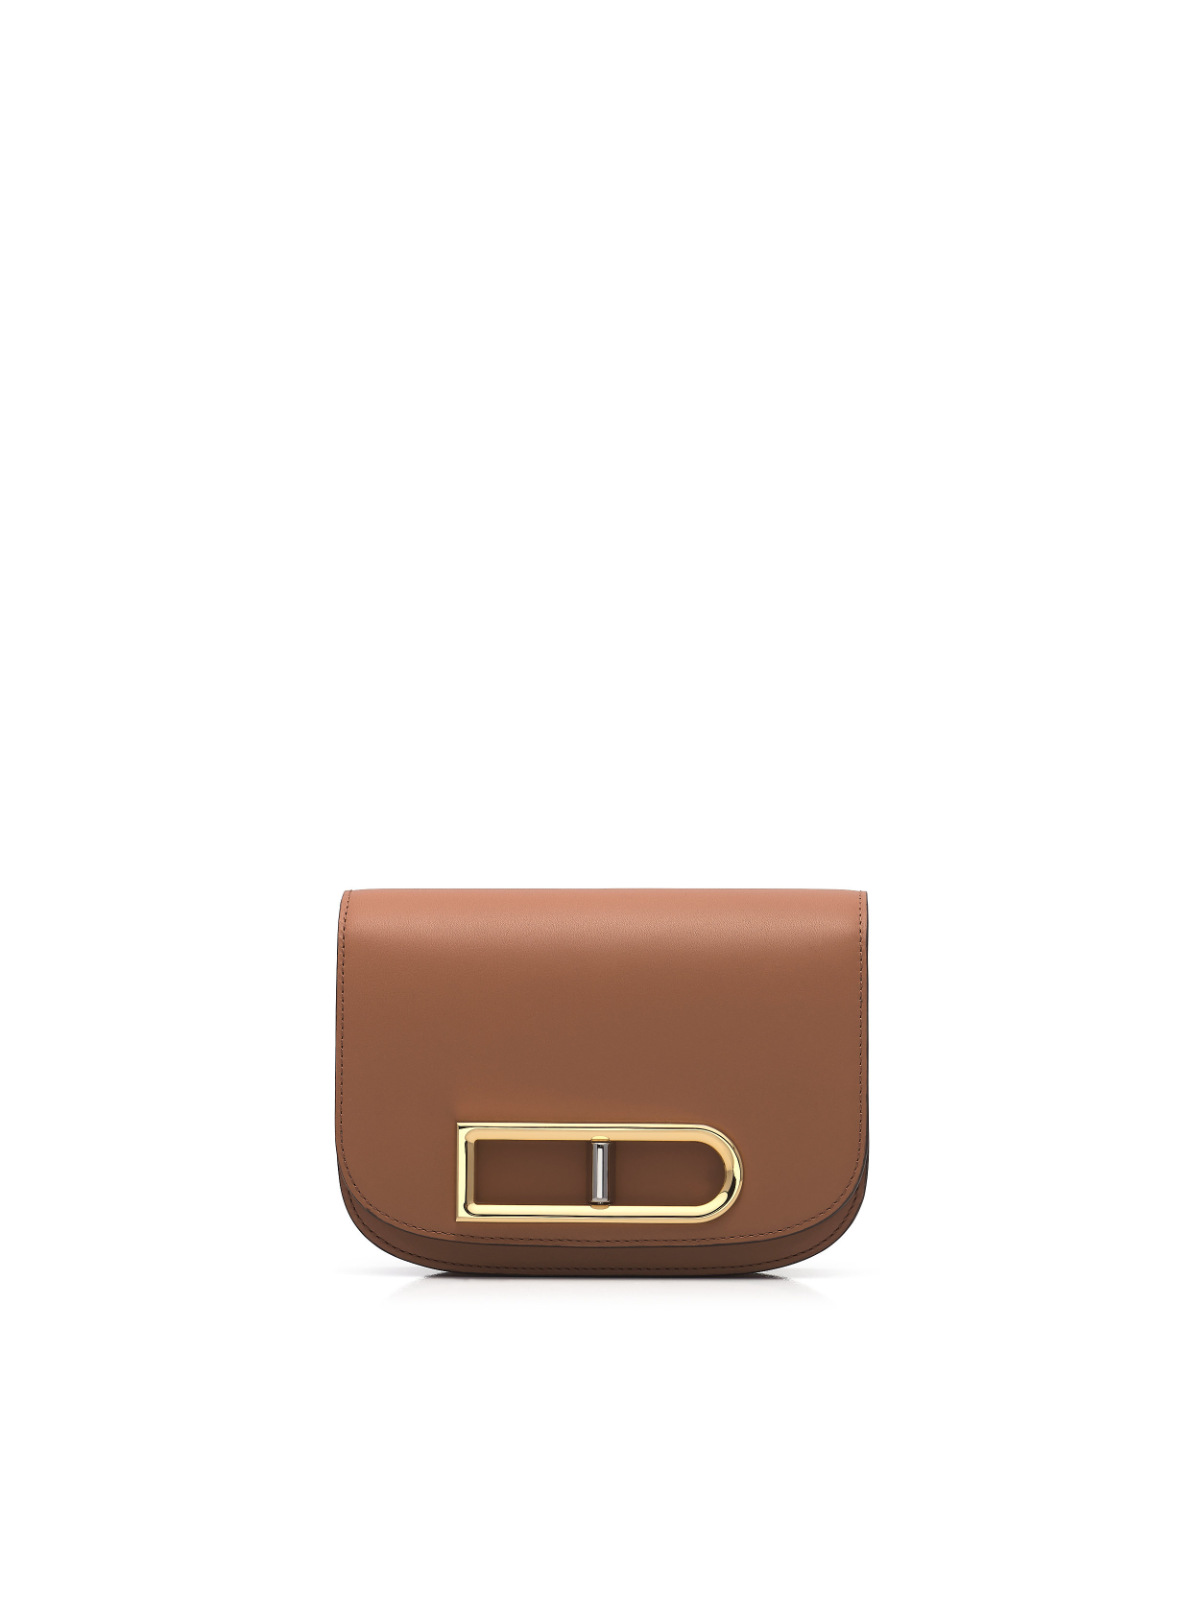 Delvaux Presents Its New Lingot Small Bag